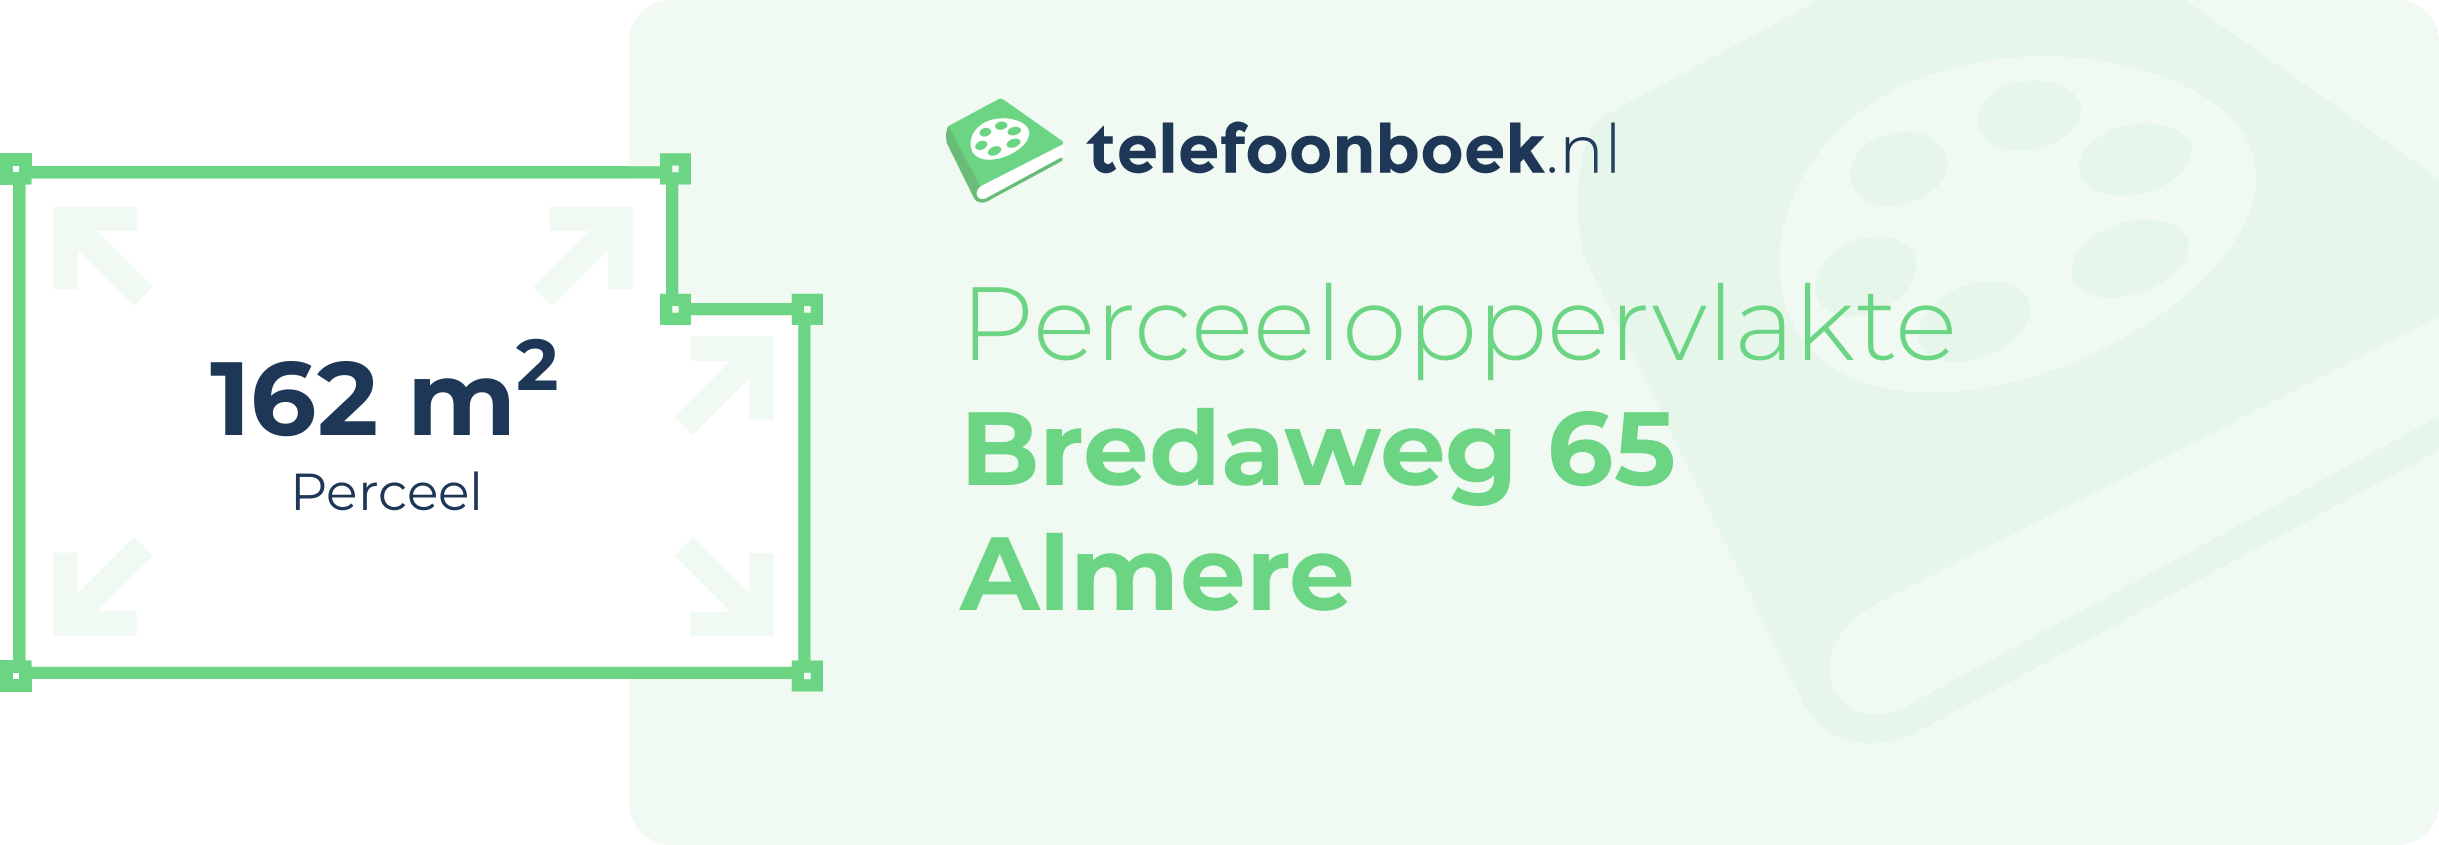 Perceeloppervlakte Bredaweg 65 Almere